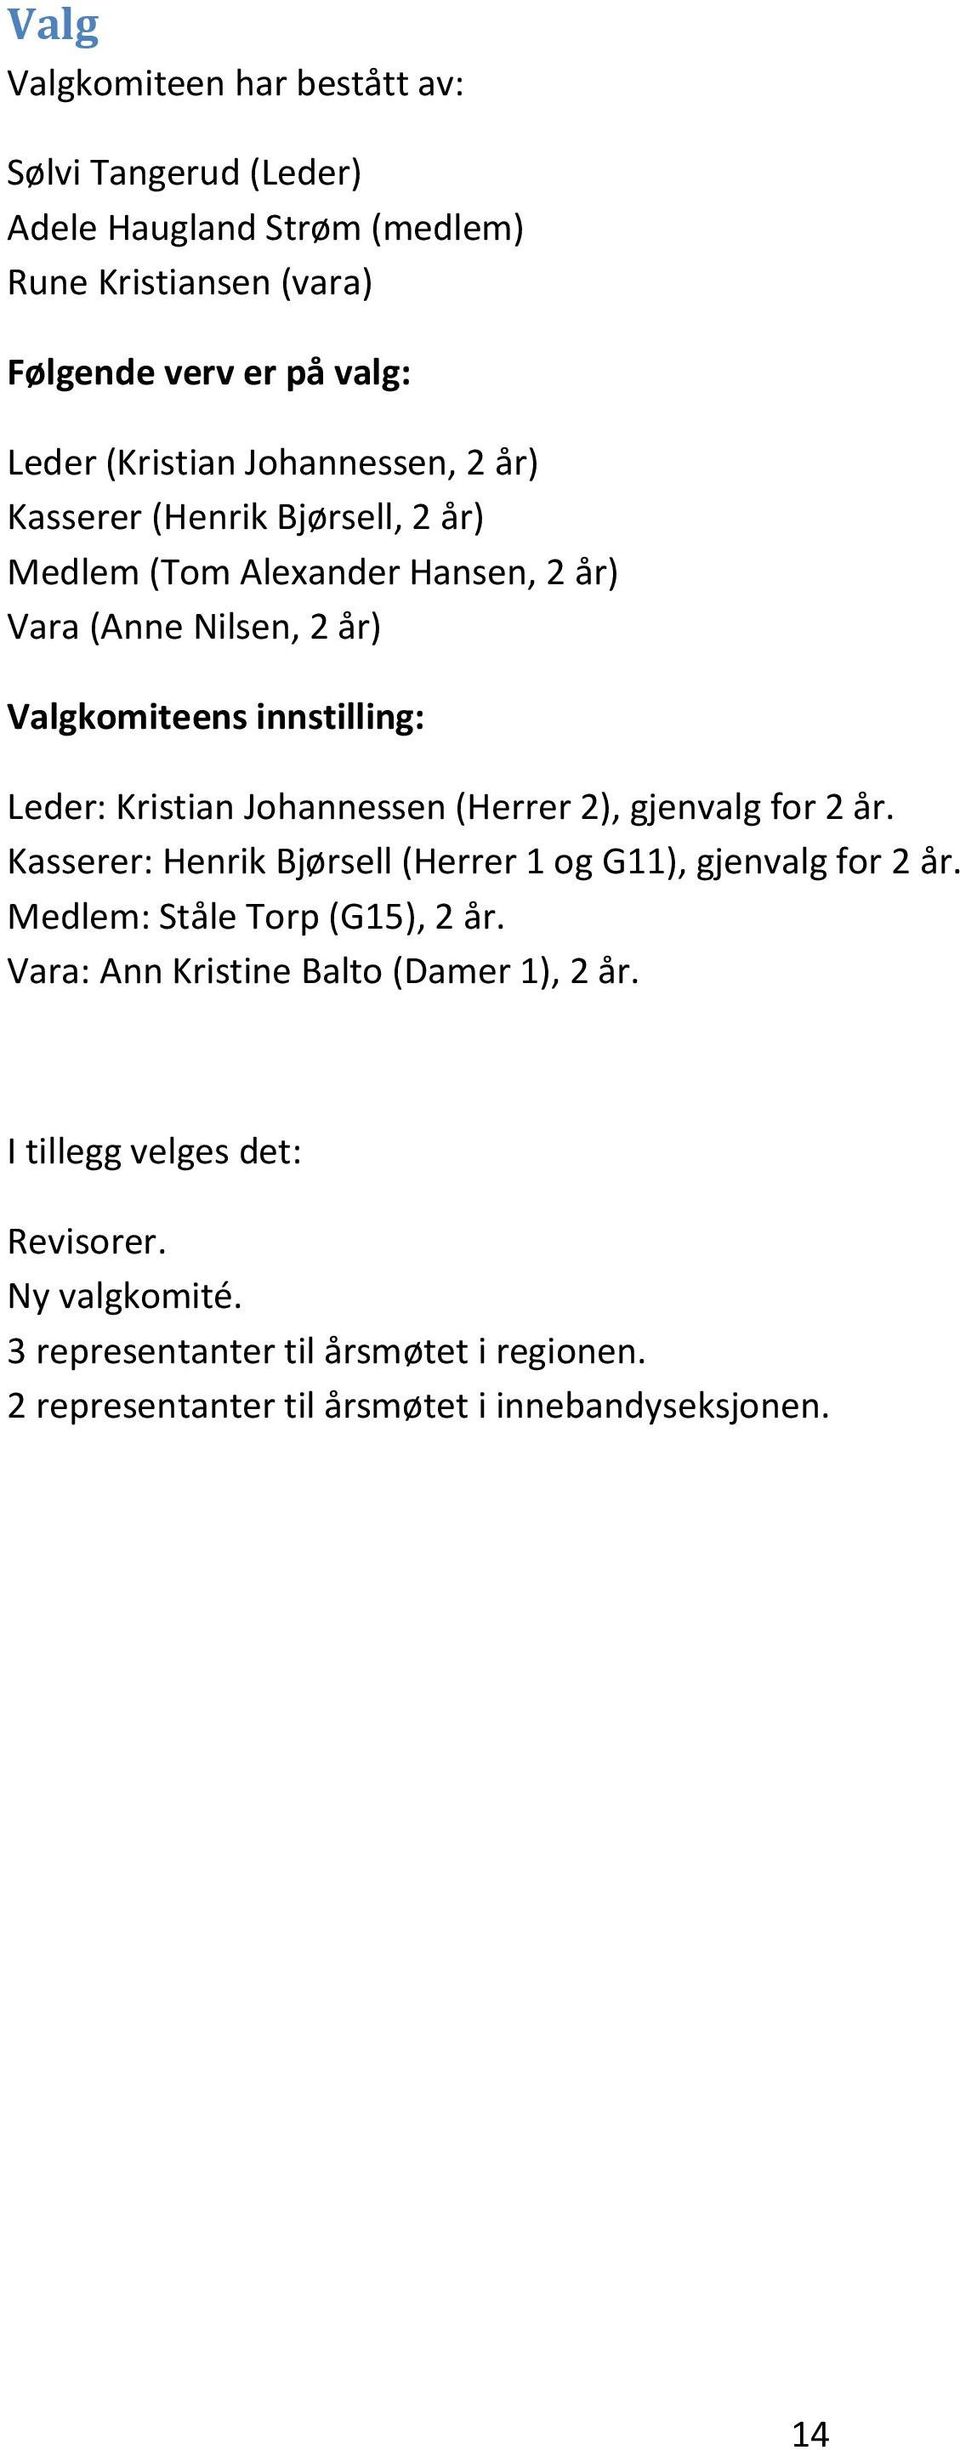 Johannessen (Herrer 2), gjenvalg for 2 år. Kasserer: Henrik Bjørsell (Herrer 1 og G11), gjenvalg for 2 år. Medlem: Ståle Torp (G15), 2 år.